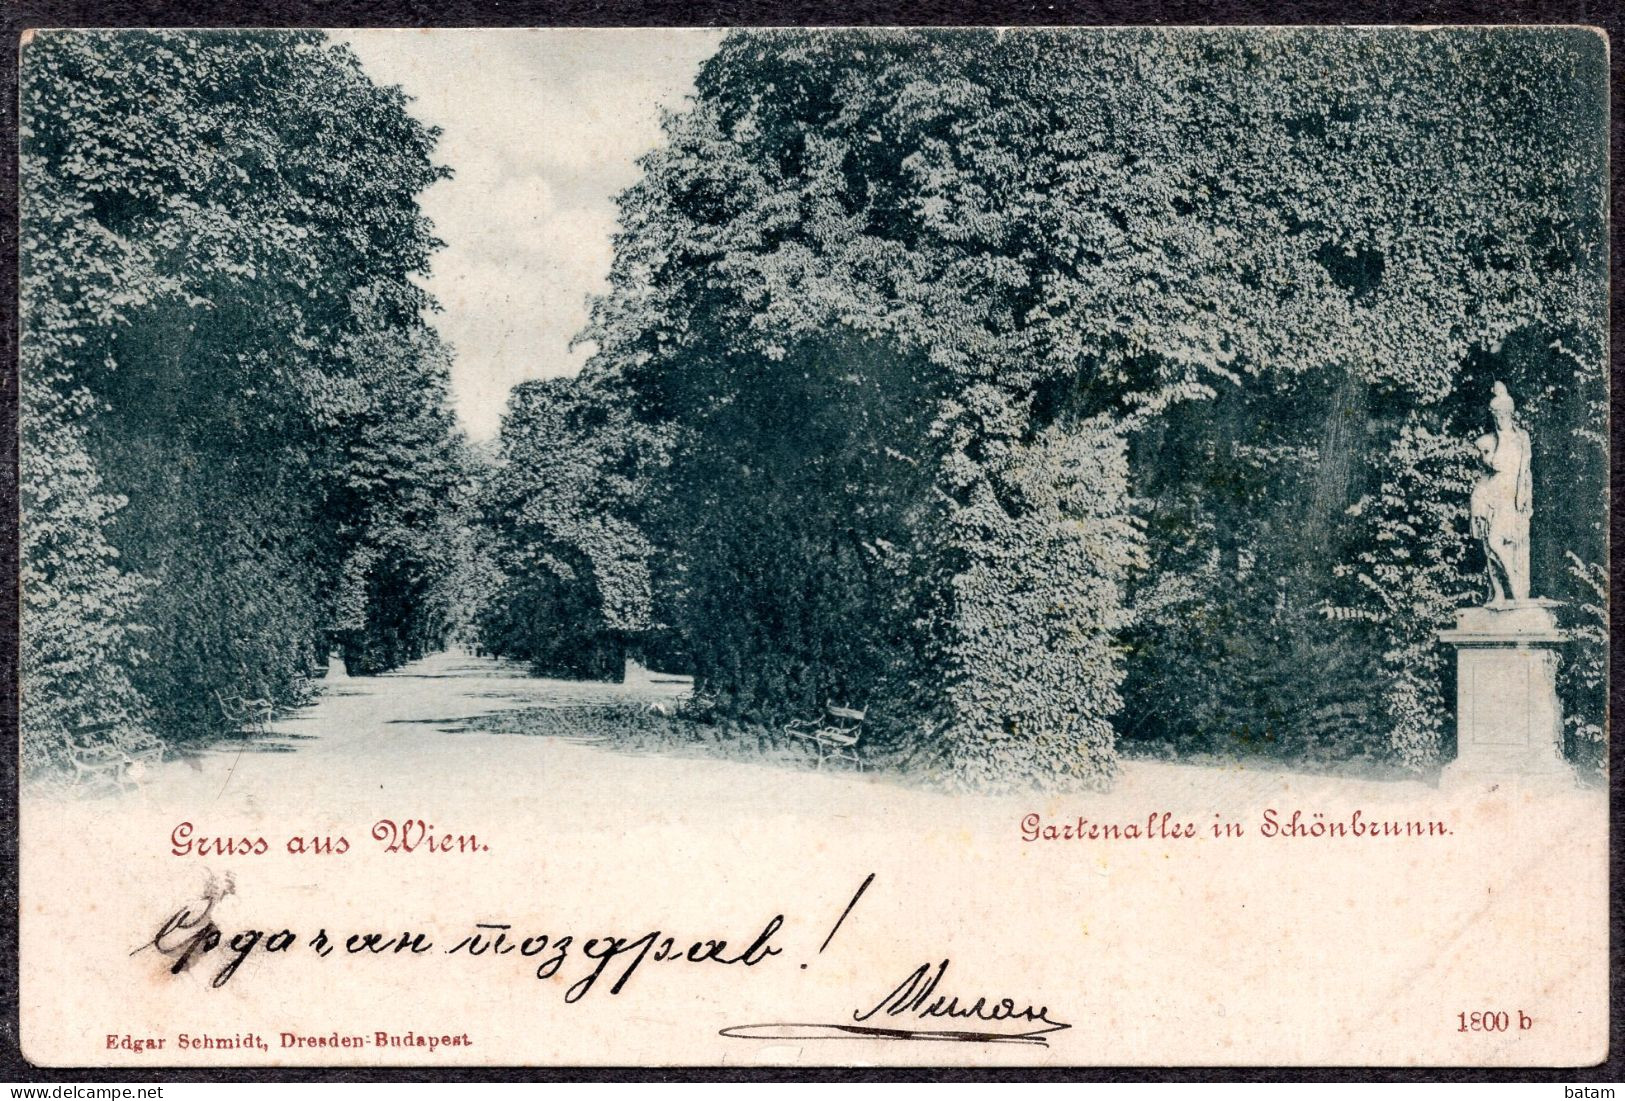 272 - Austria 1899 - Vienna - Schonbrunn Palace - Postcard - Schloss Schönbrunn